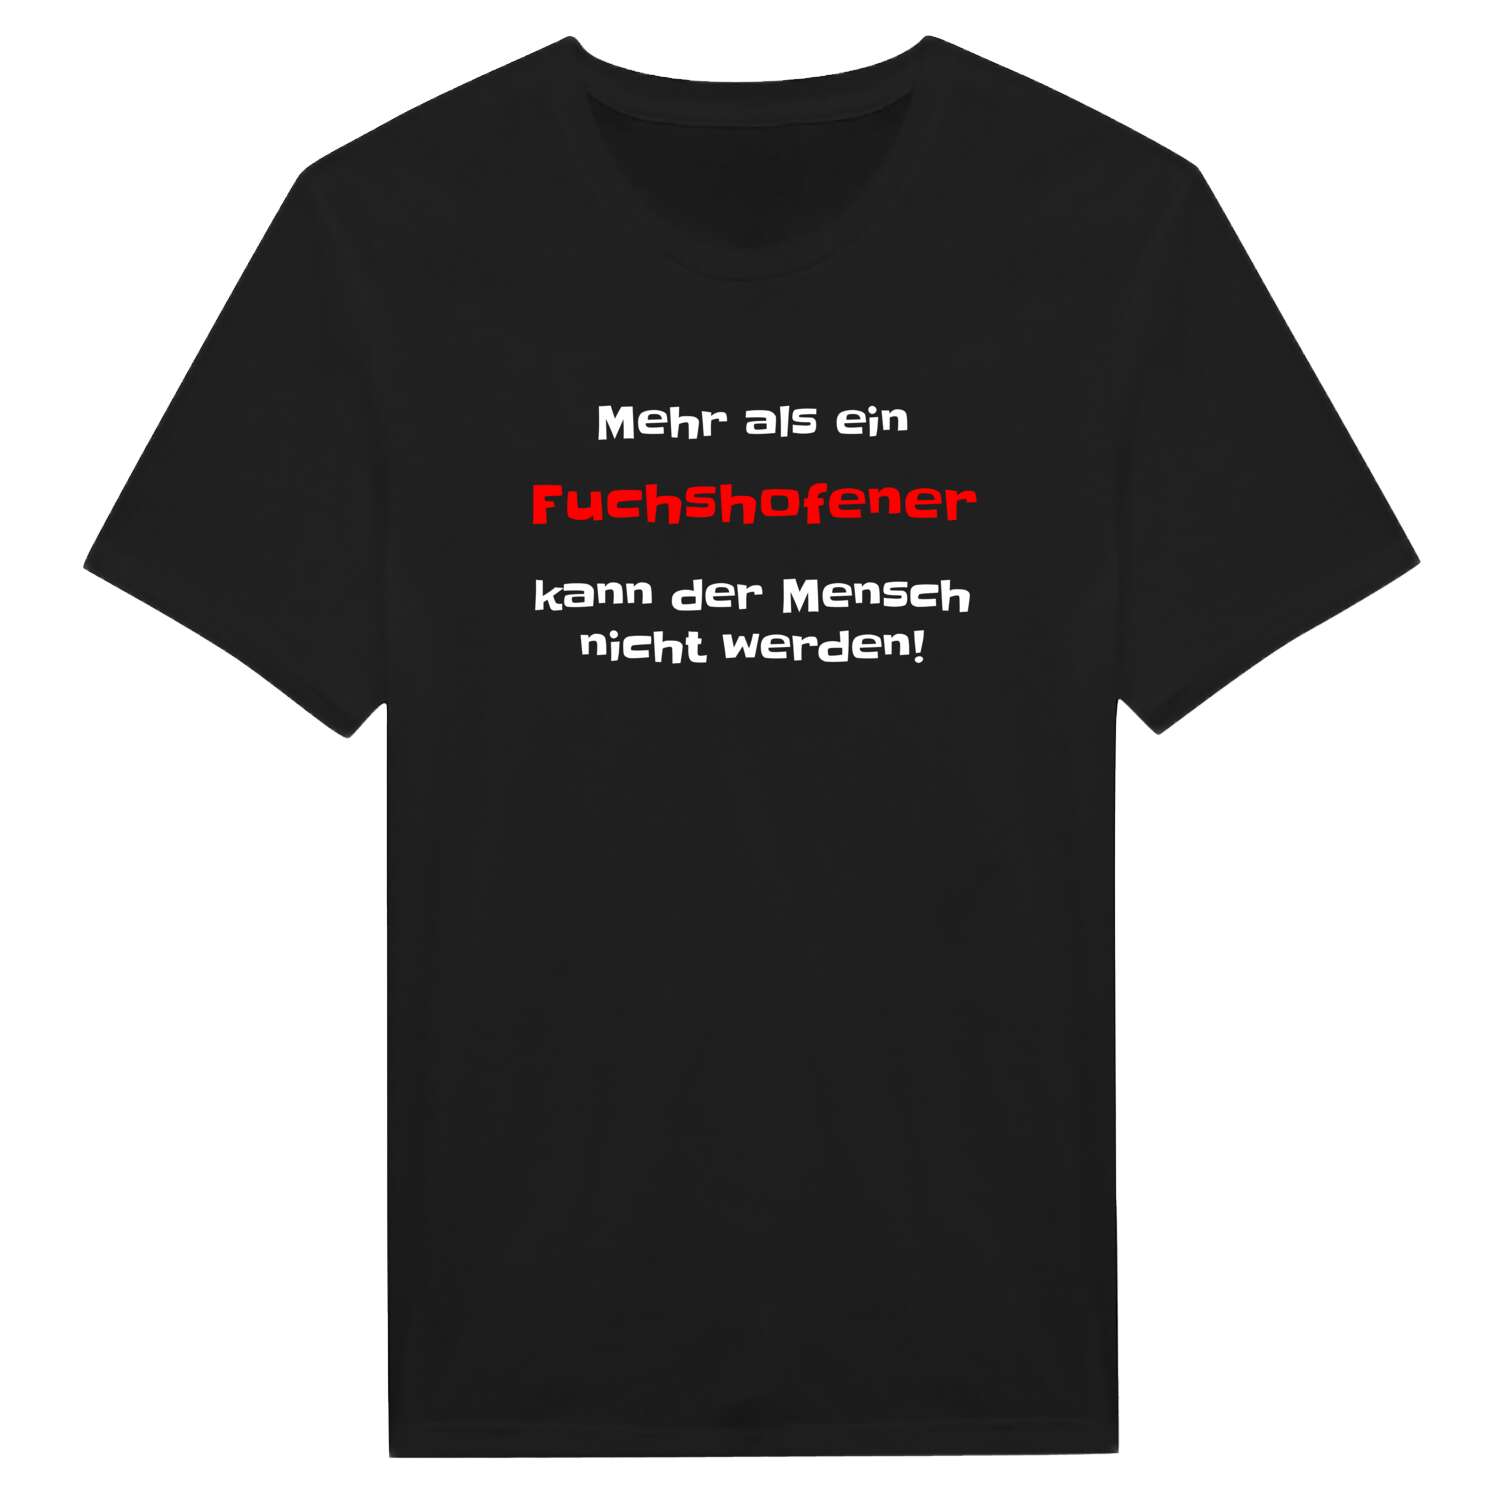 Fuchshofen T-Shirt »Mehr als ein«